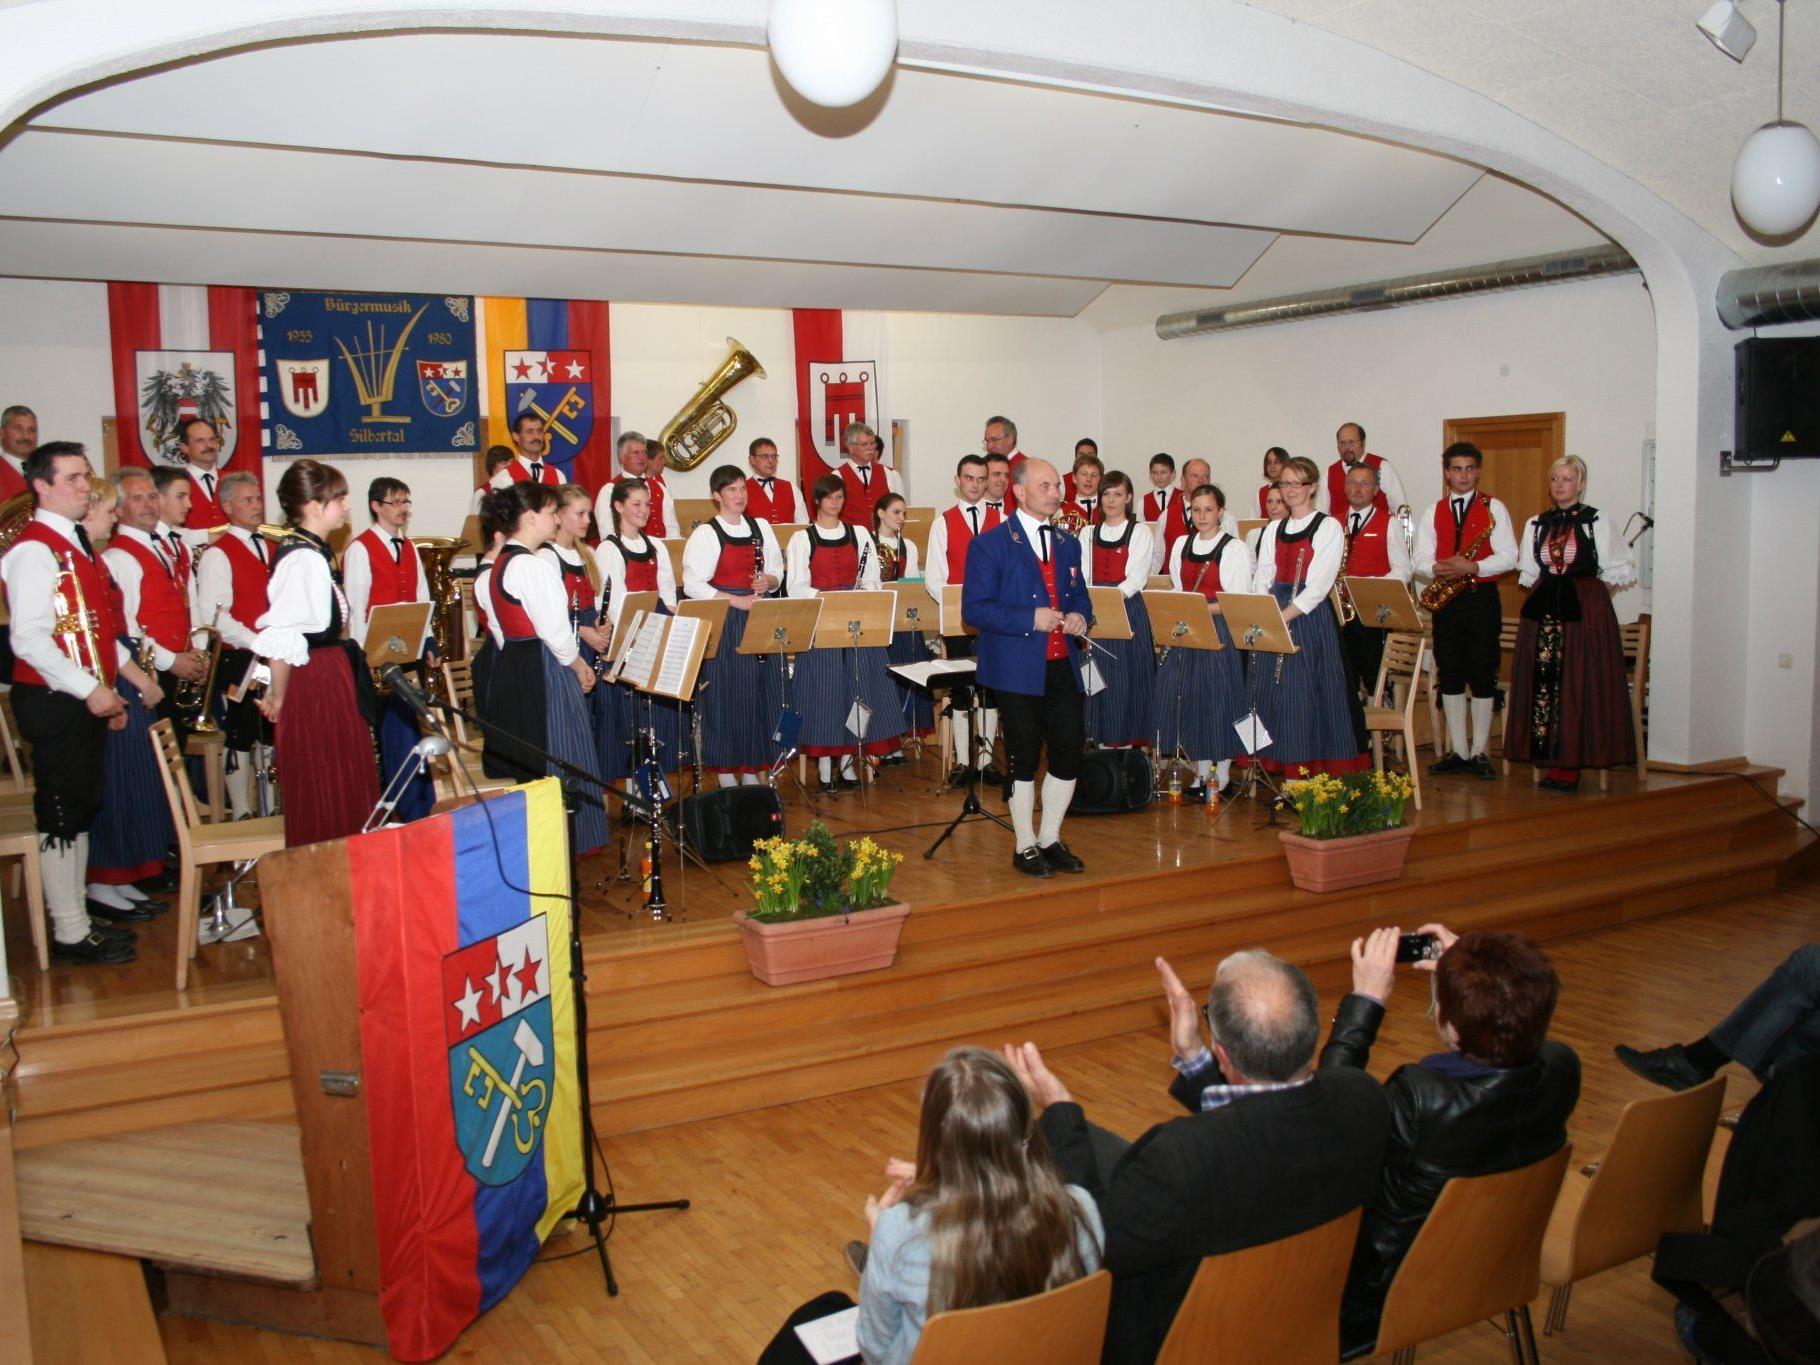 Das Vereinshaus bot einen würdigen Rahmen für das Frühjahrskonzert der Büürgermusik Silbertal.